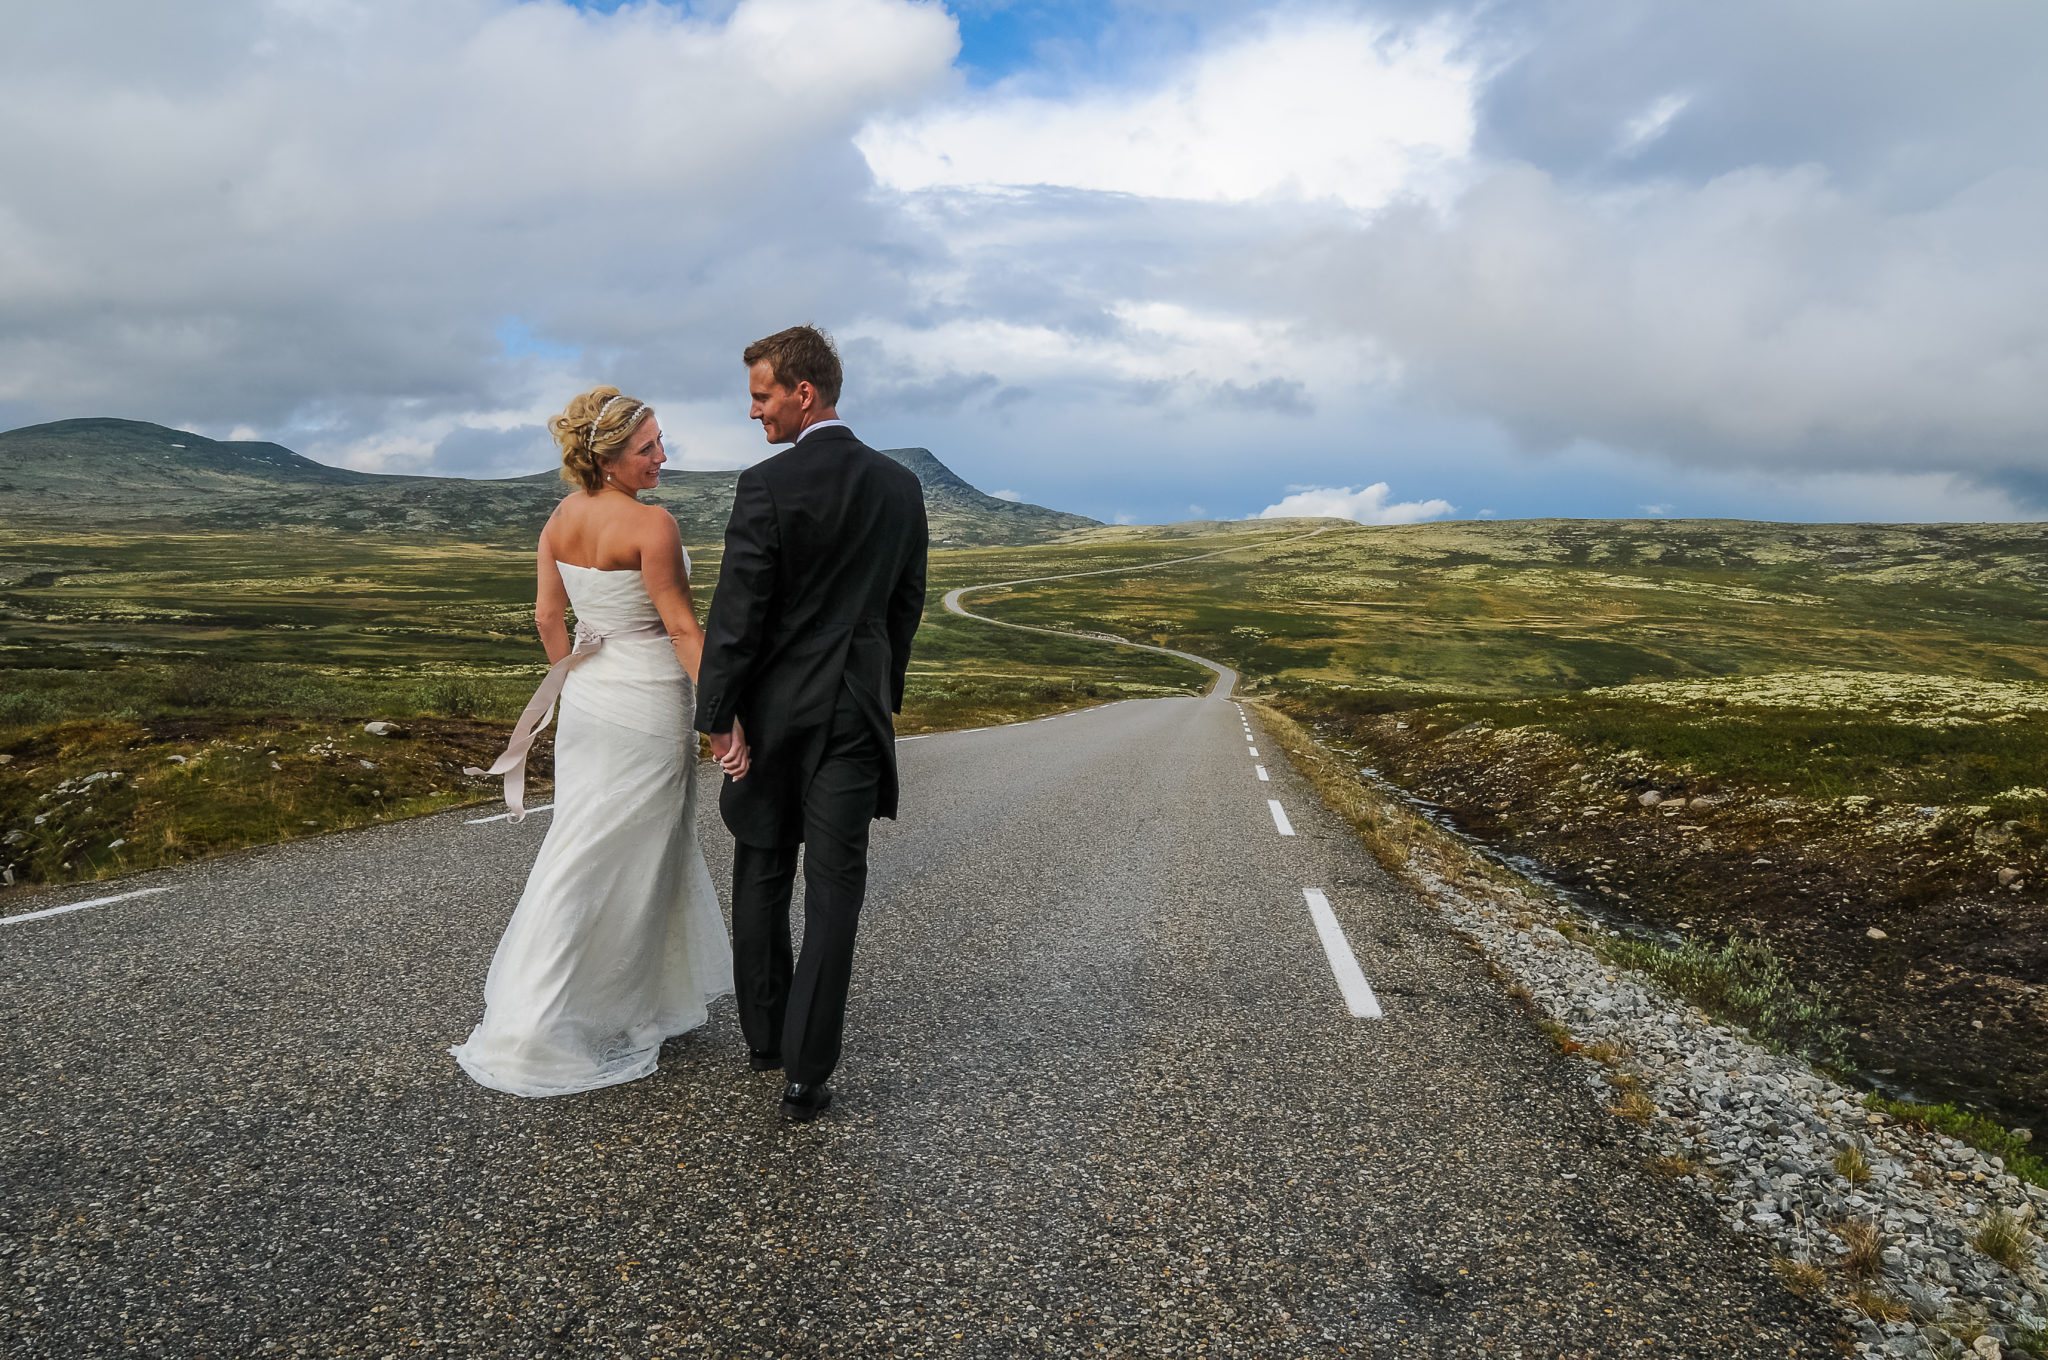 Bildet er et bryllupsfoto tatt på Friisvegen på Ringebufjellet. Syns bildet illustrerer ekteskapet på en måte man ikke ser så ofte i tradisjonelle bilder samtidig som det viser frem en av våre flotteste fjellveier